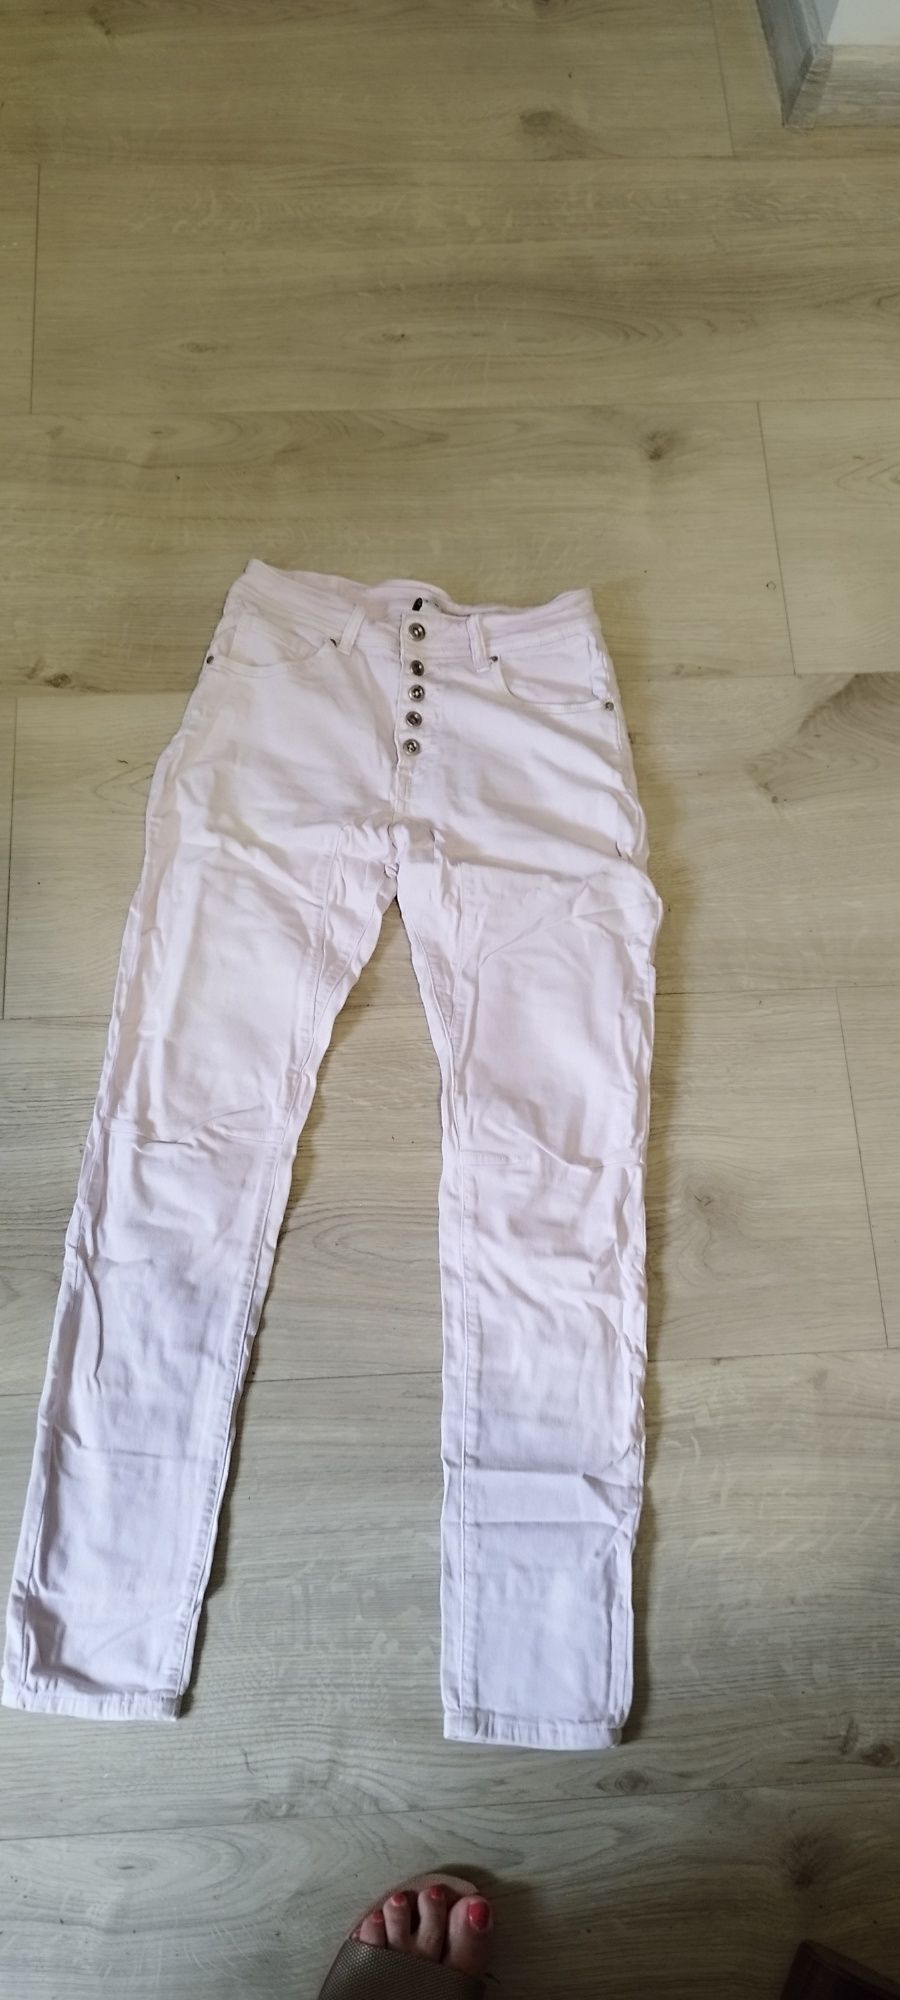 Spodnie Jeans rozowe, stretch, guma,r.36